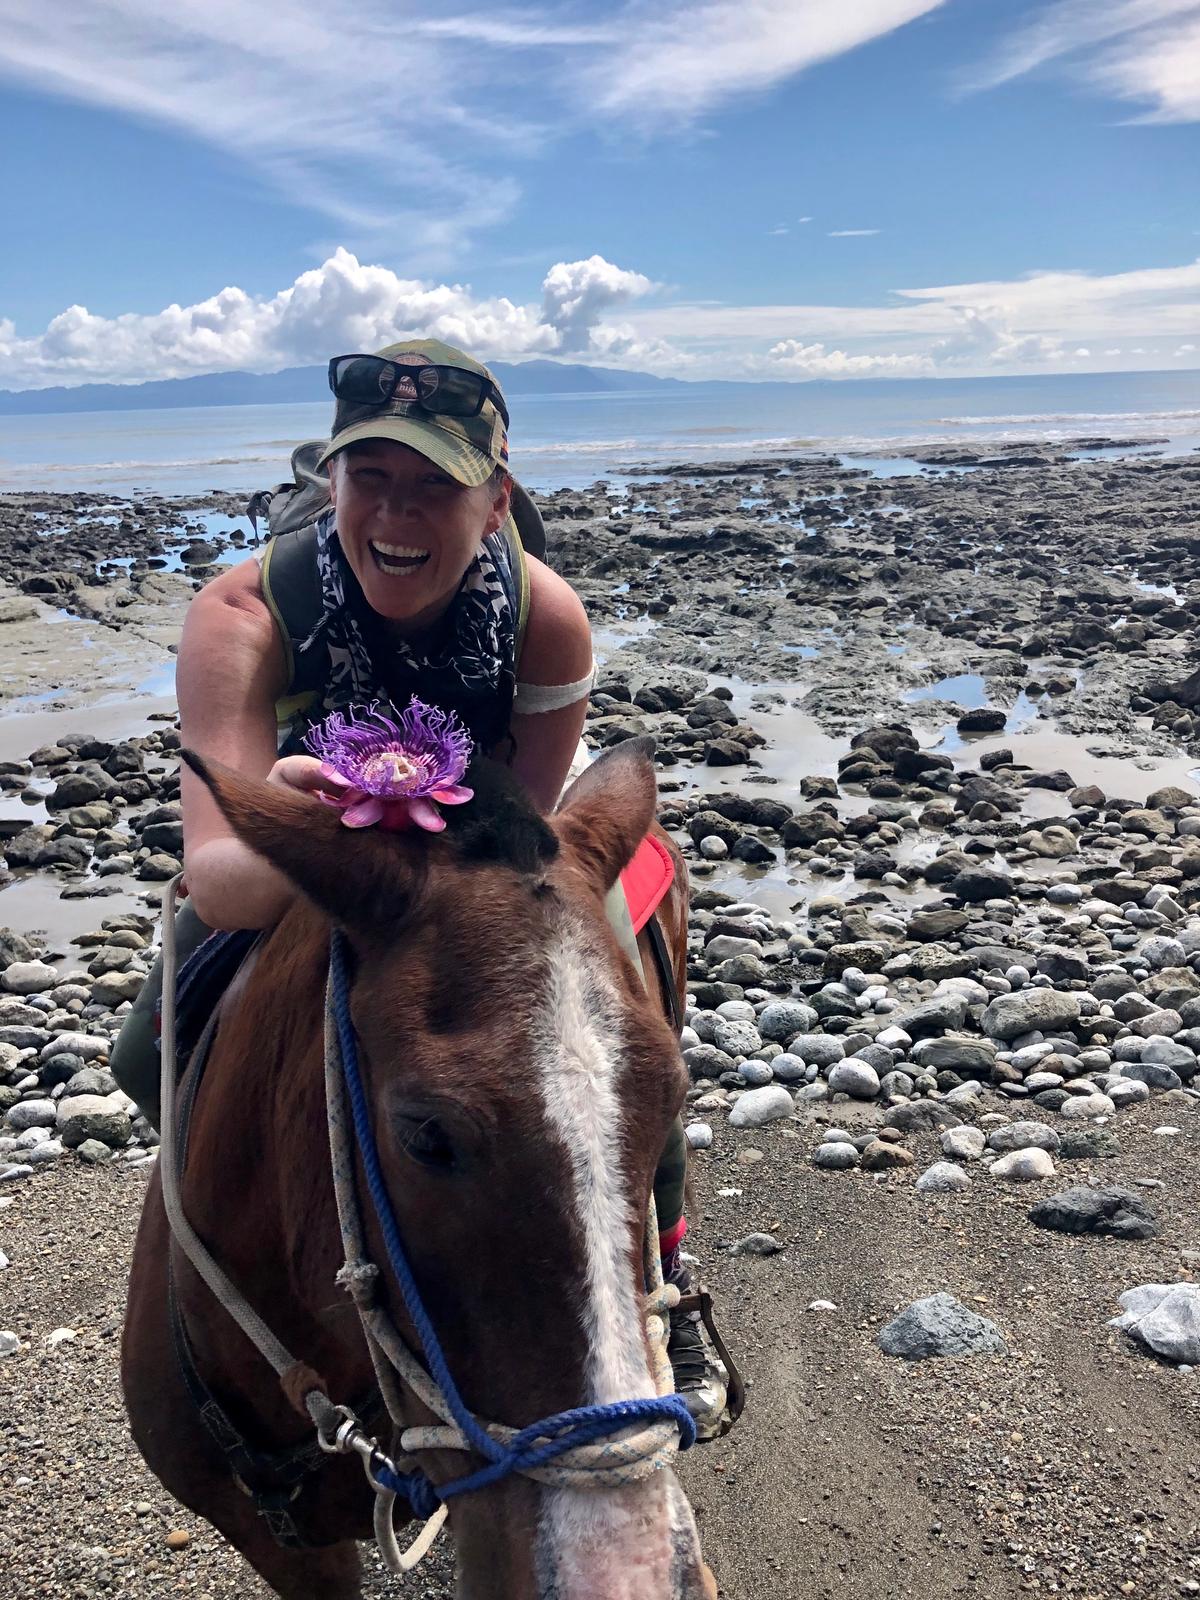 Exploring the Osa Peninsula on horseback. (Tami Ellis)